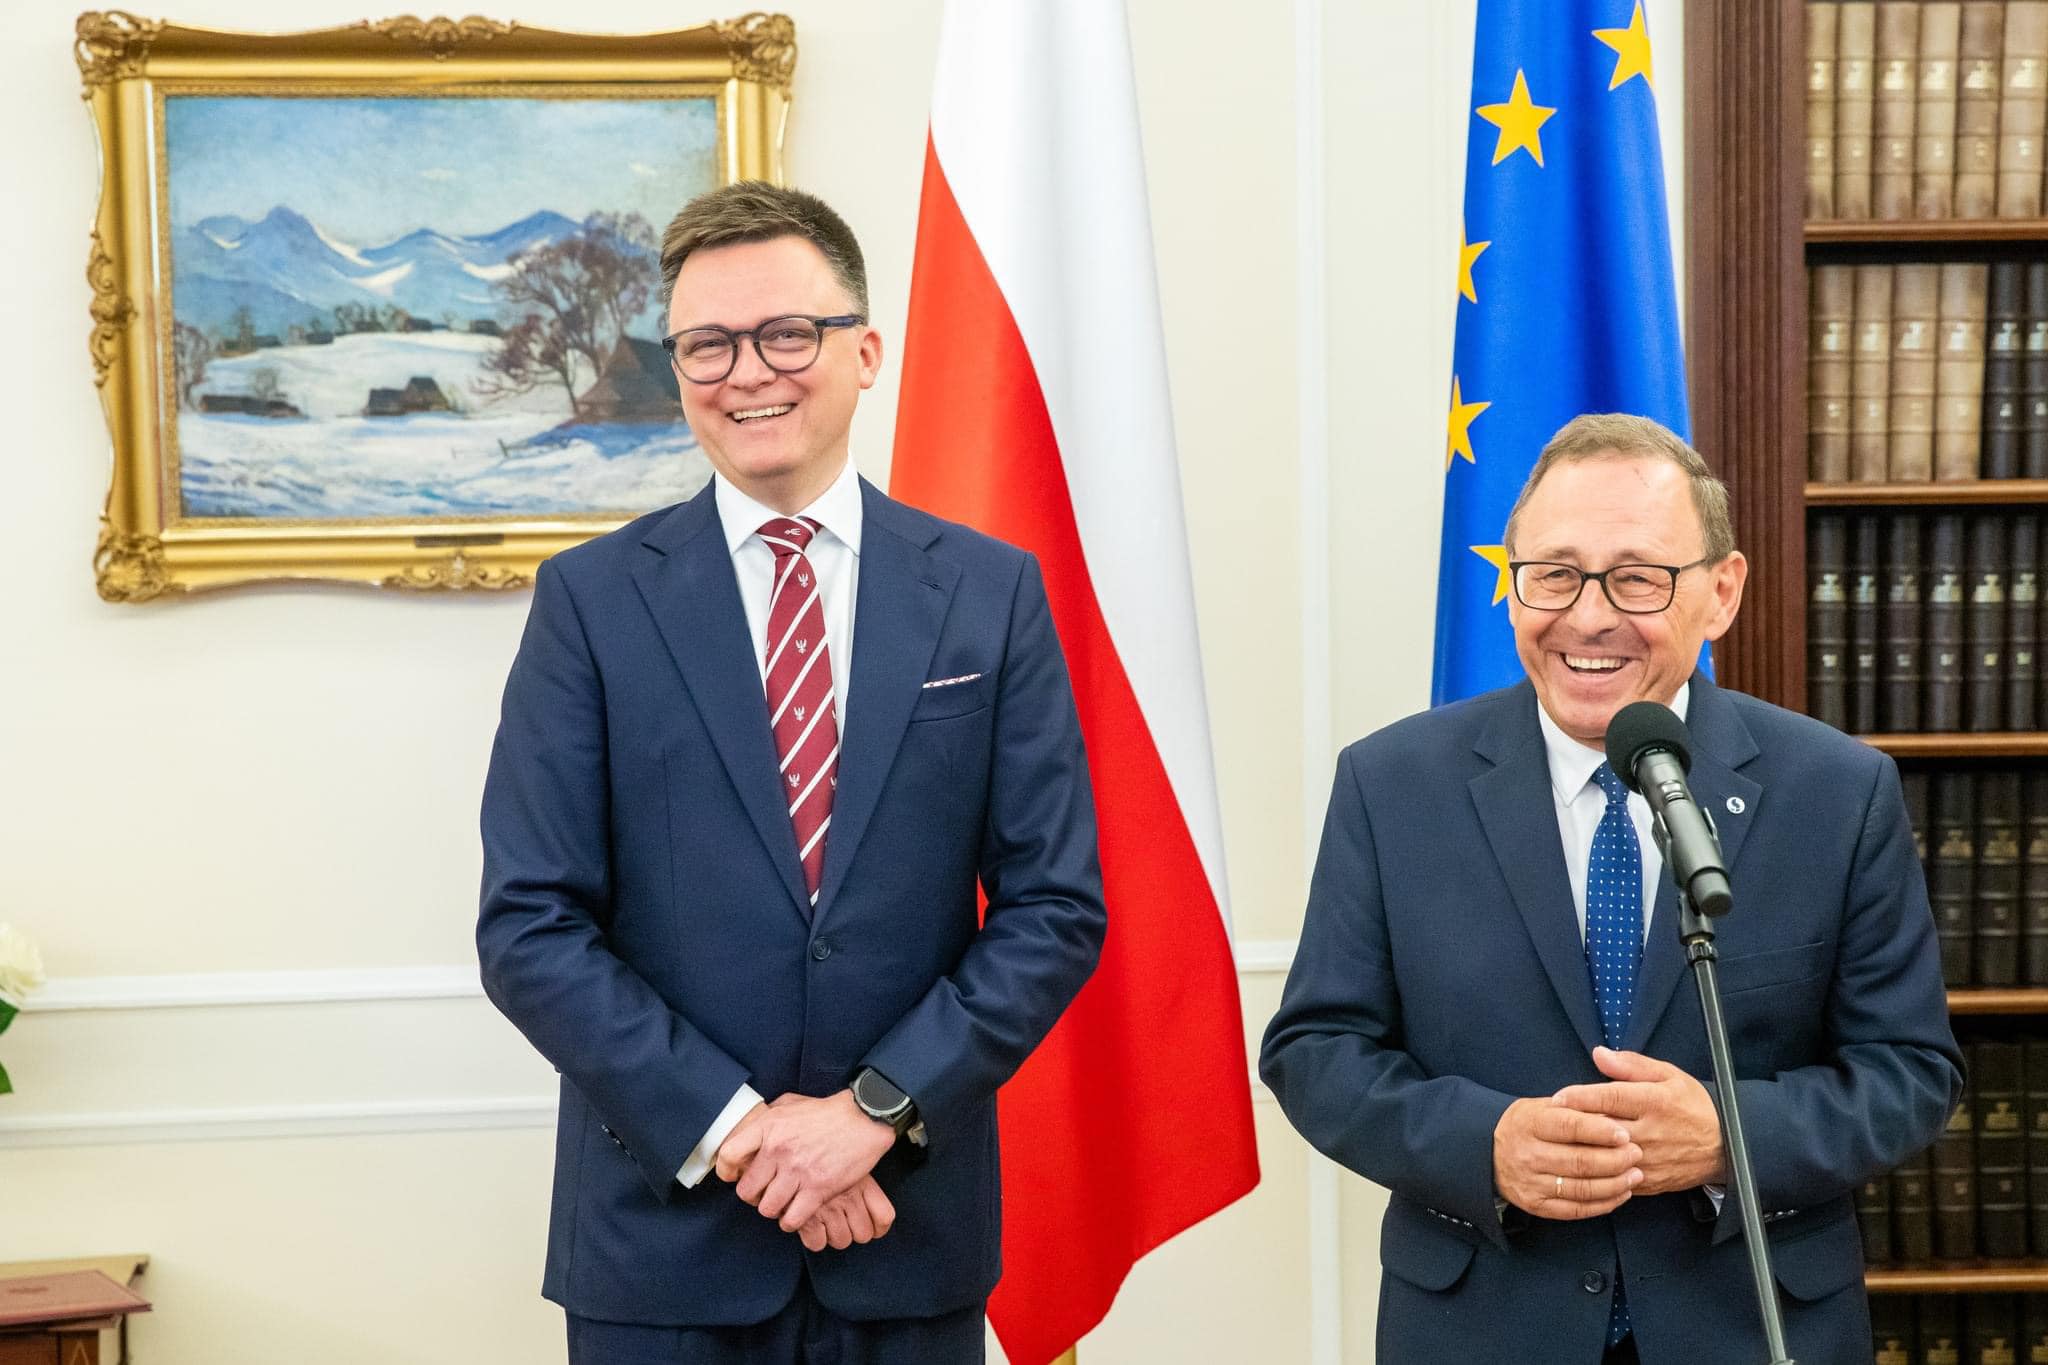 Ryszard Galla zum Berater für nationale und ethnische Minderheiten des Sejm-Präsidenten ernannt!